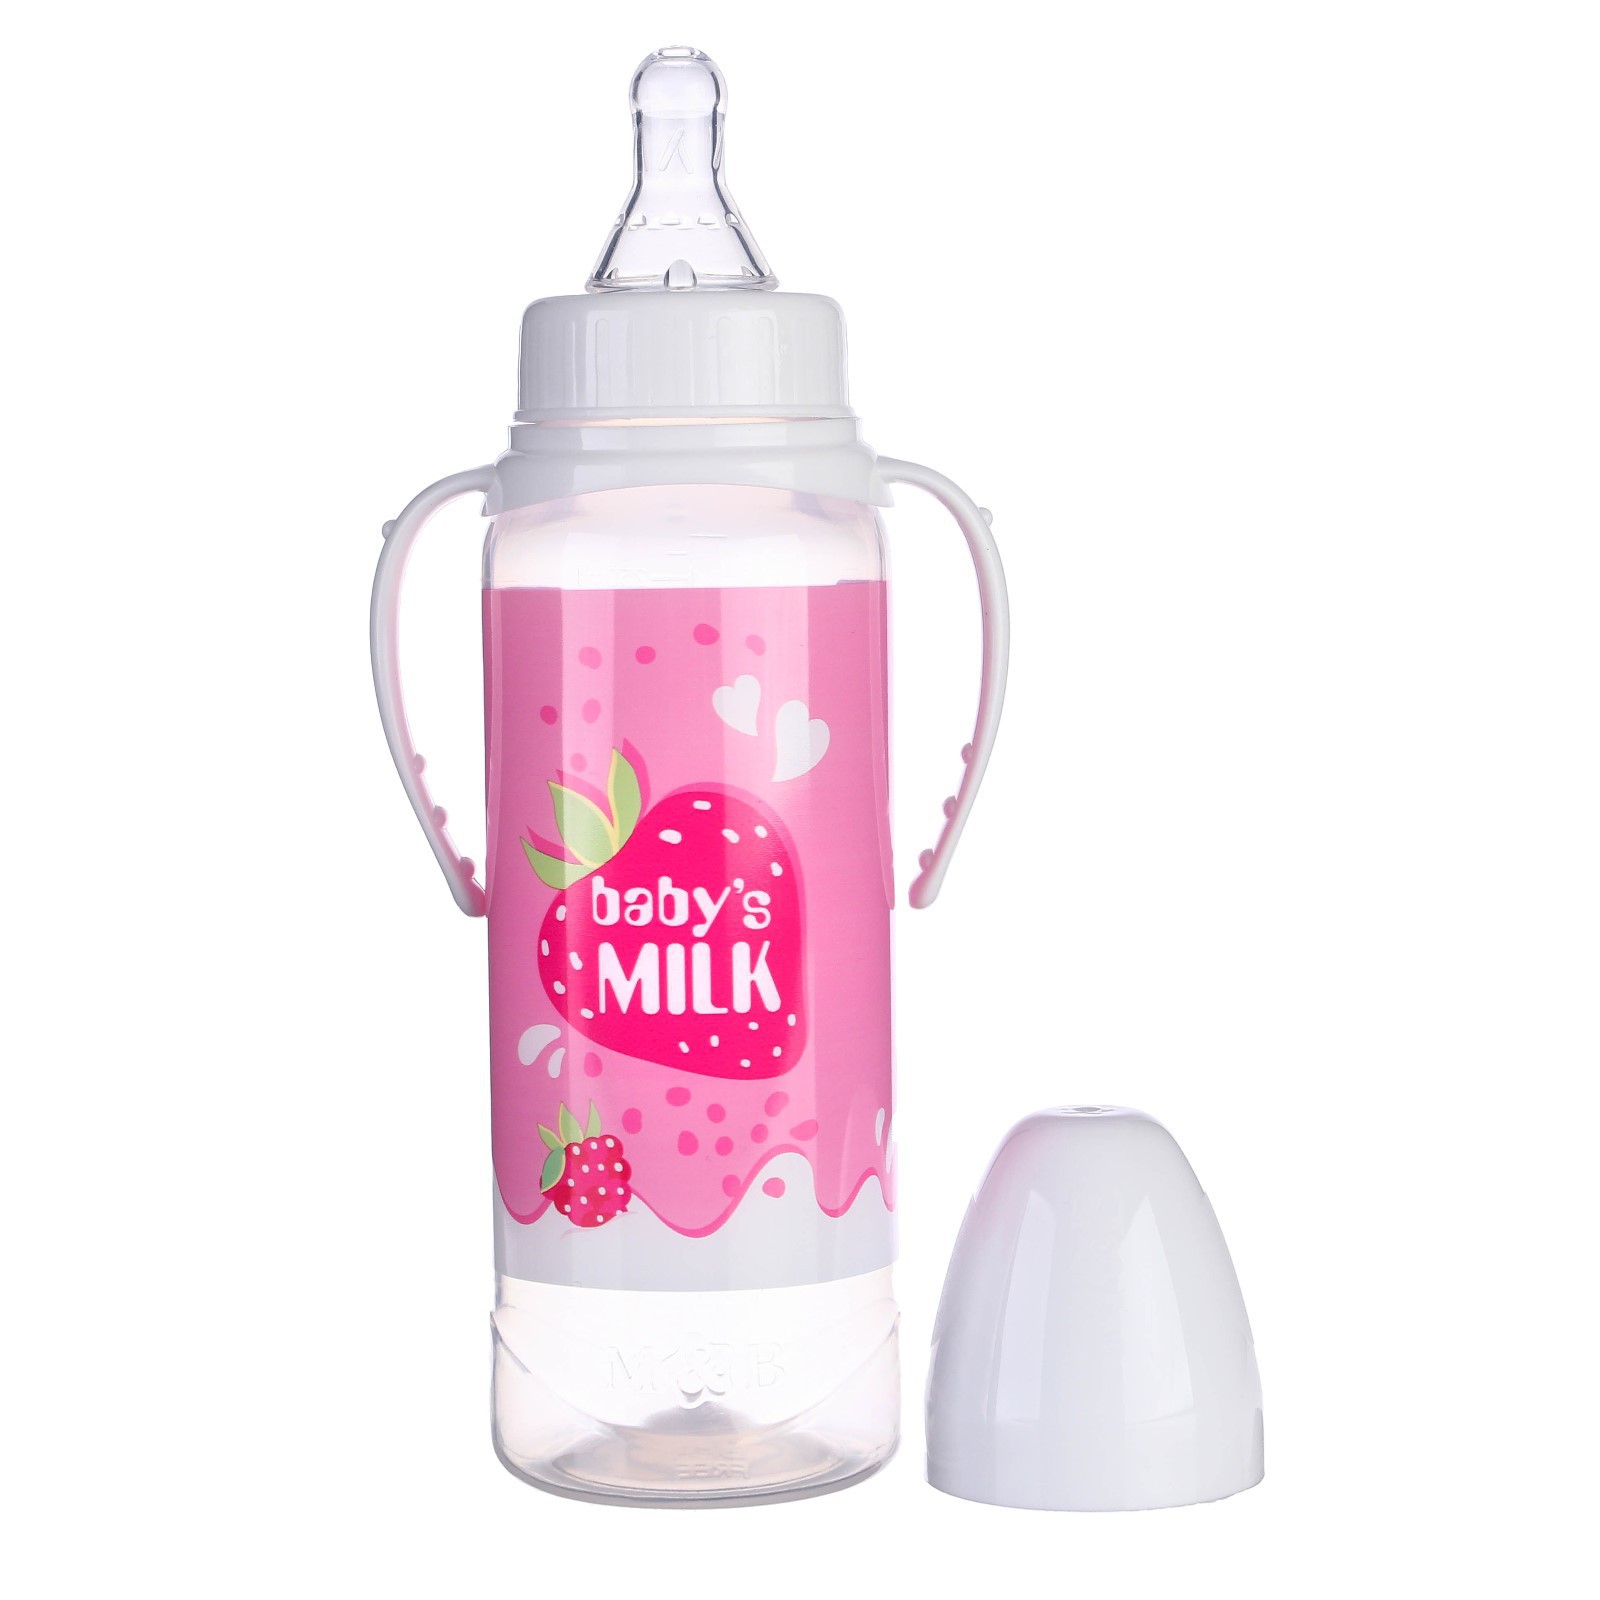 Бутылочка Mum and Baby для кормления подарочная «Клубничное молоко» 250 мл. с соской с ручками - фото 3